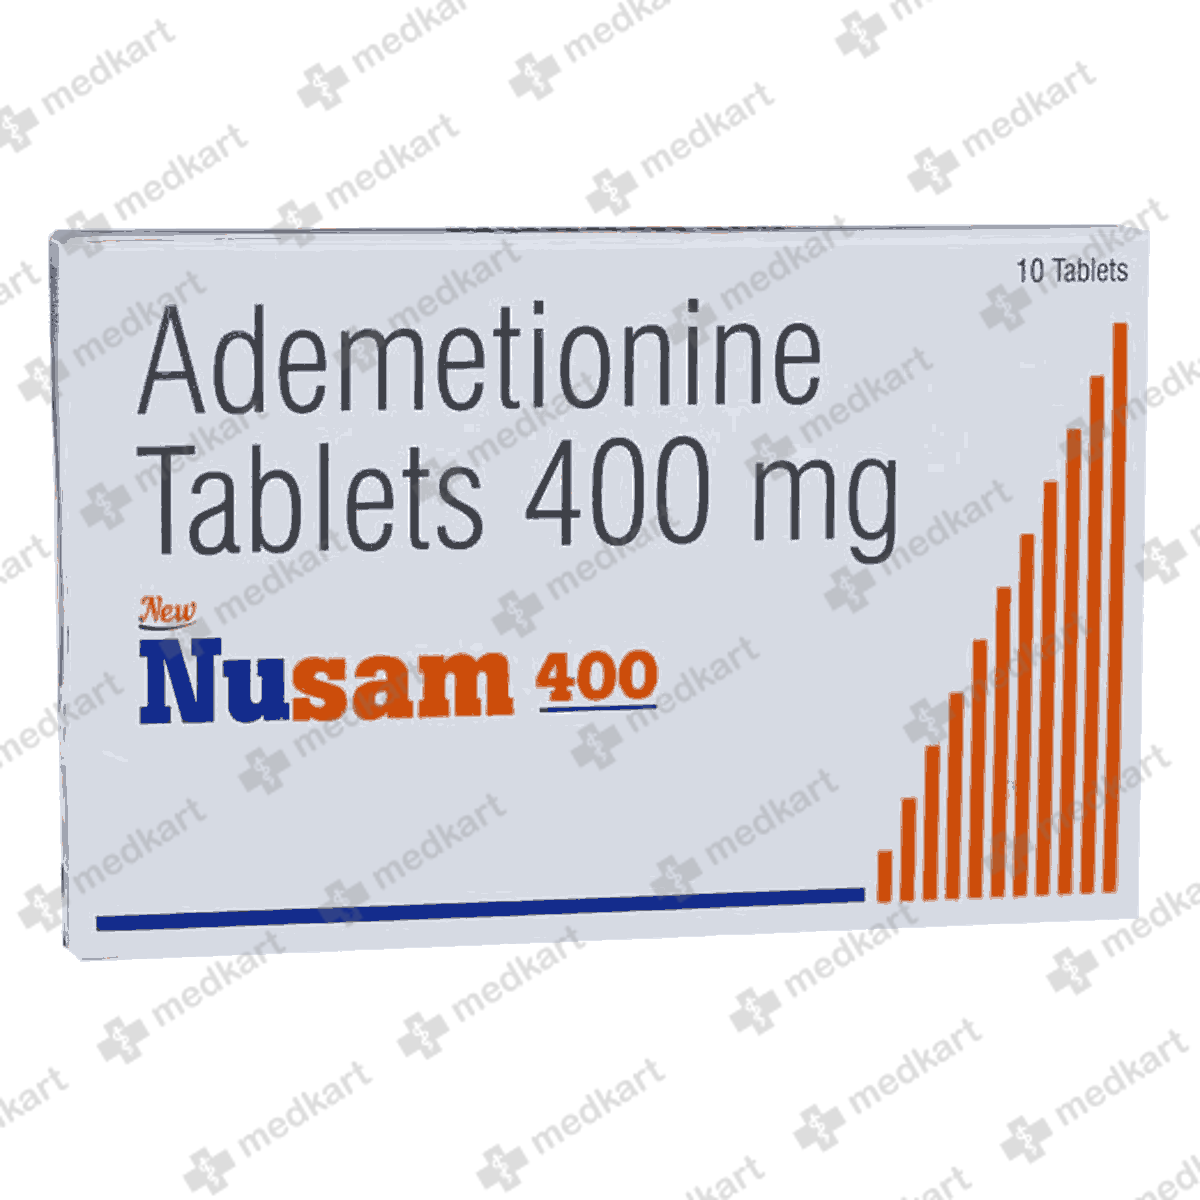 nusam-400mg-tablet-10s